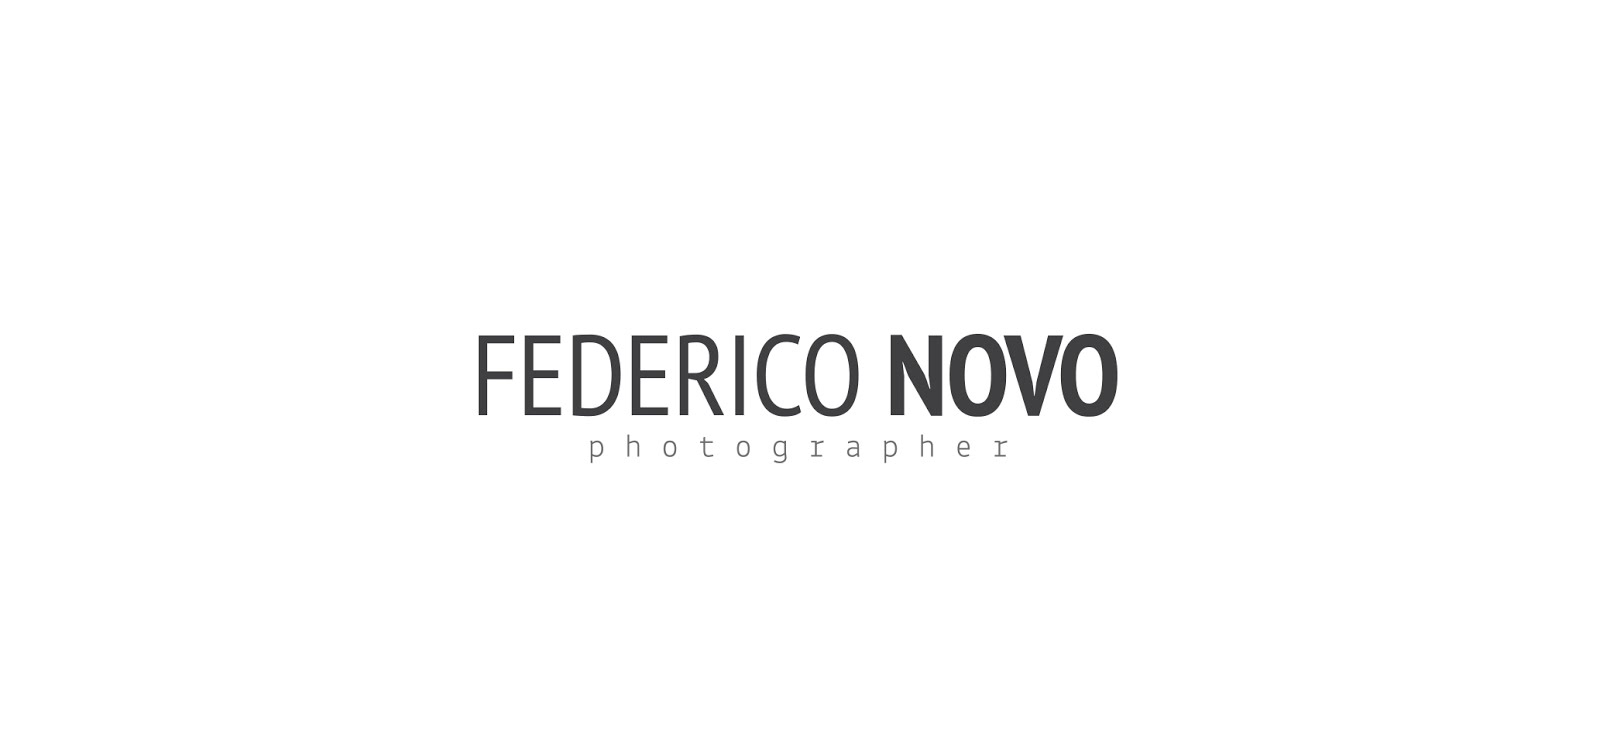 FEDERICO NOVO PHOTOGRAPHER